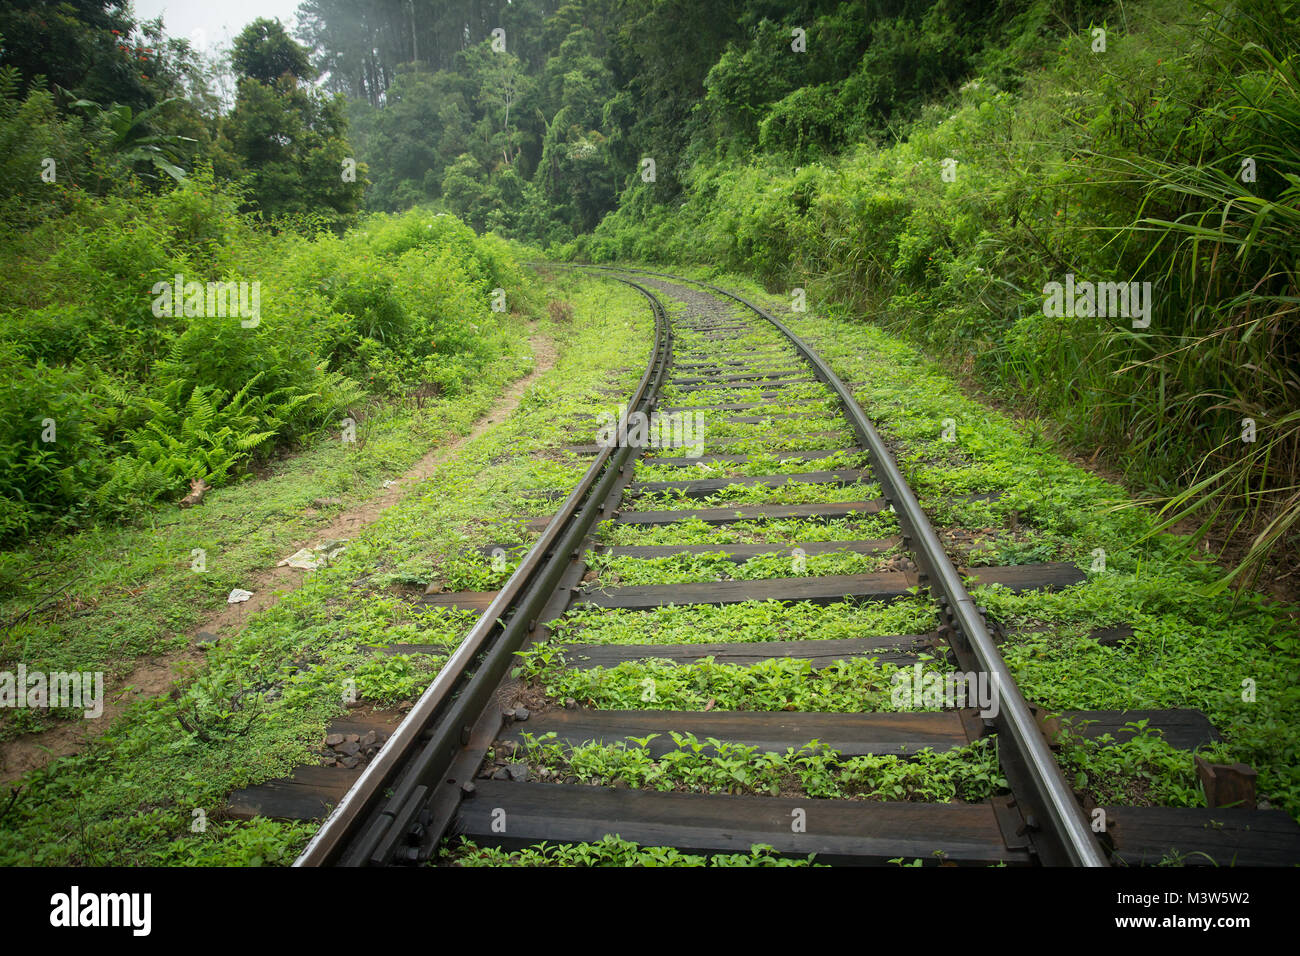 Les voies de chemin de fer dans la jungle verte Banque D'Images